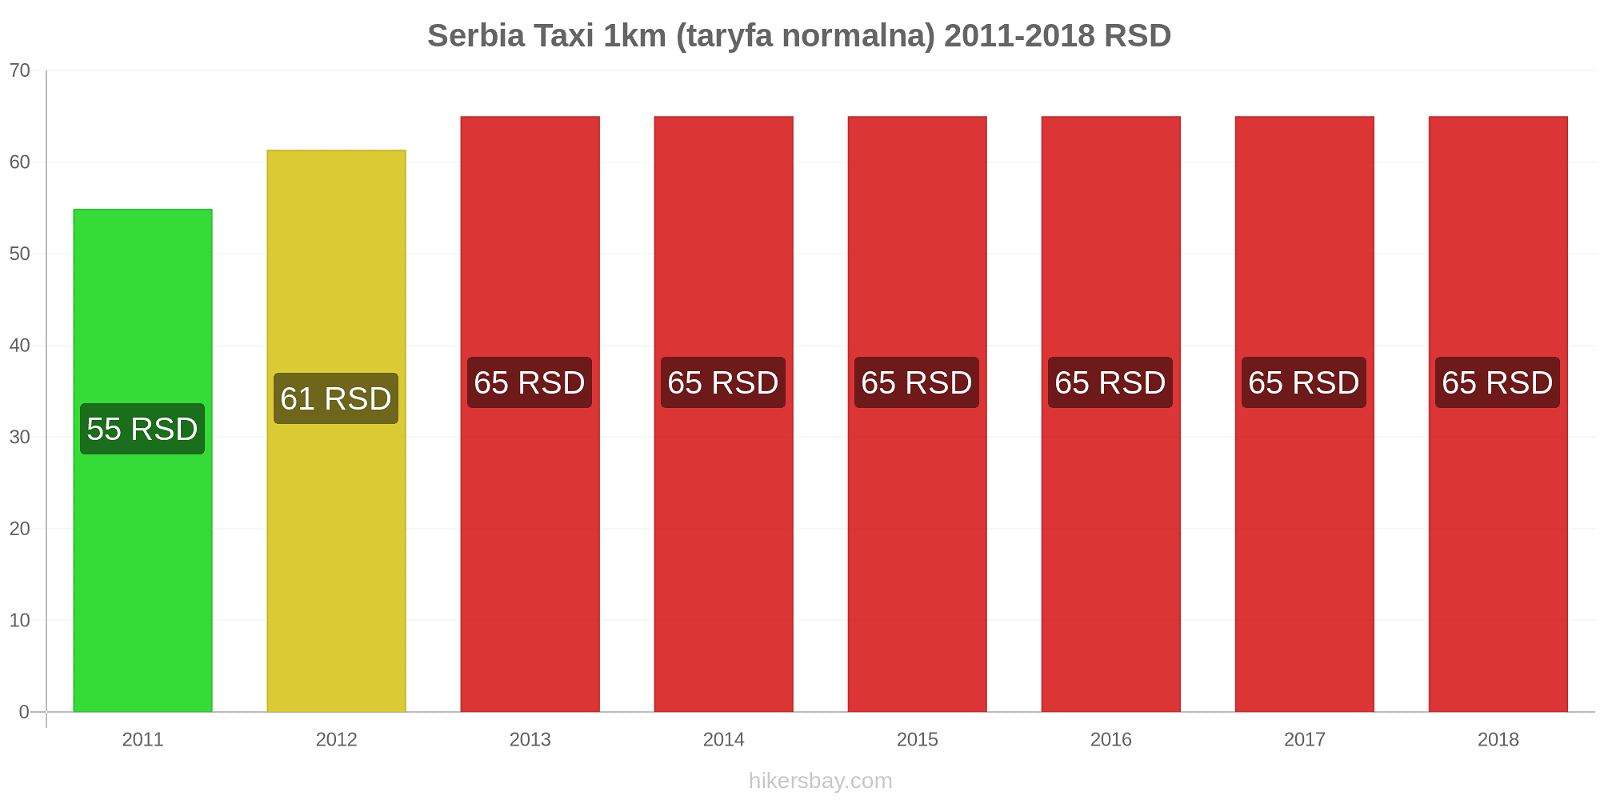 Serbia zmiany cen Taxi 1km (taryfa normalna) hikersbay.com